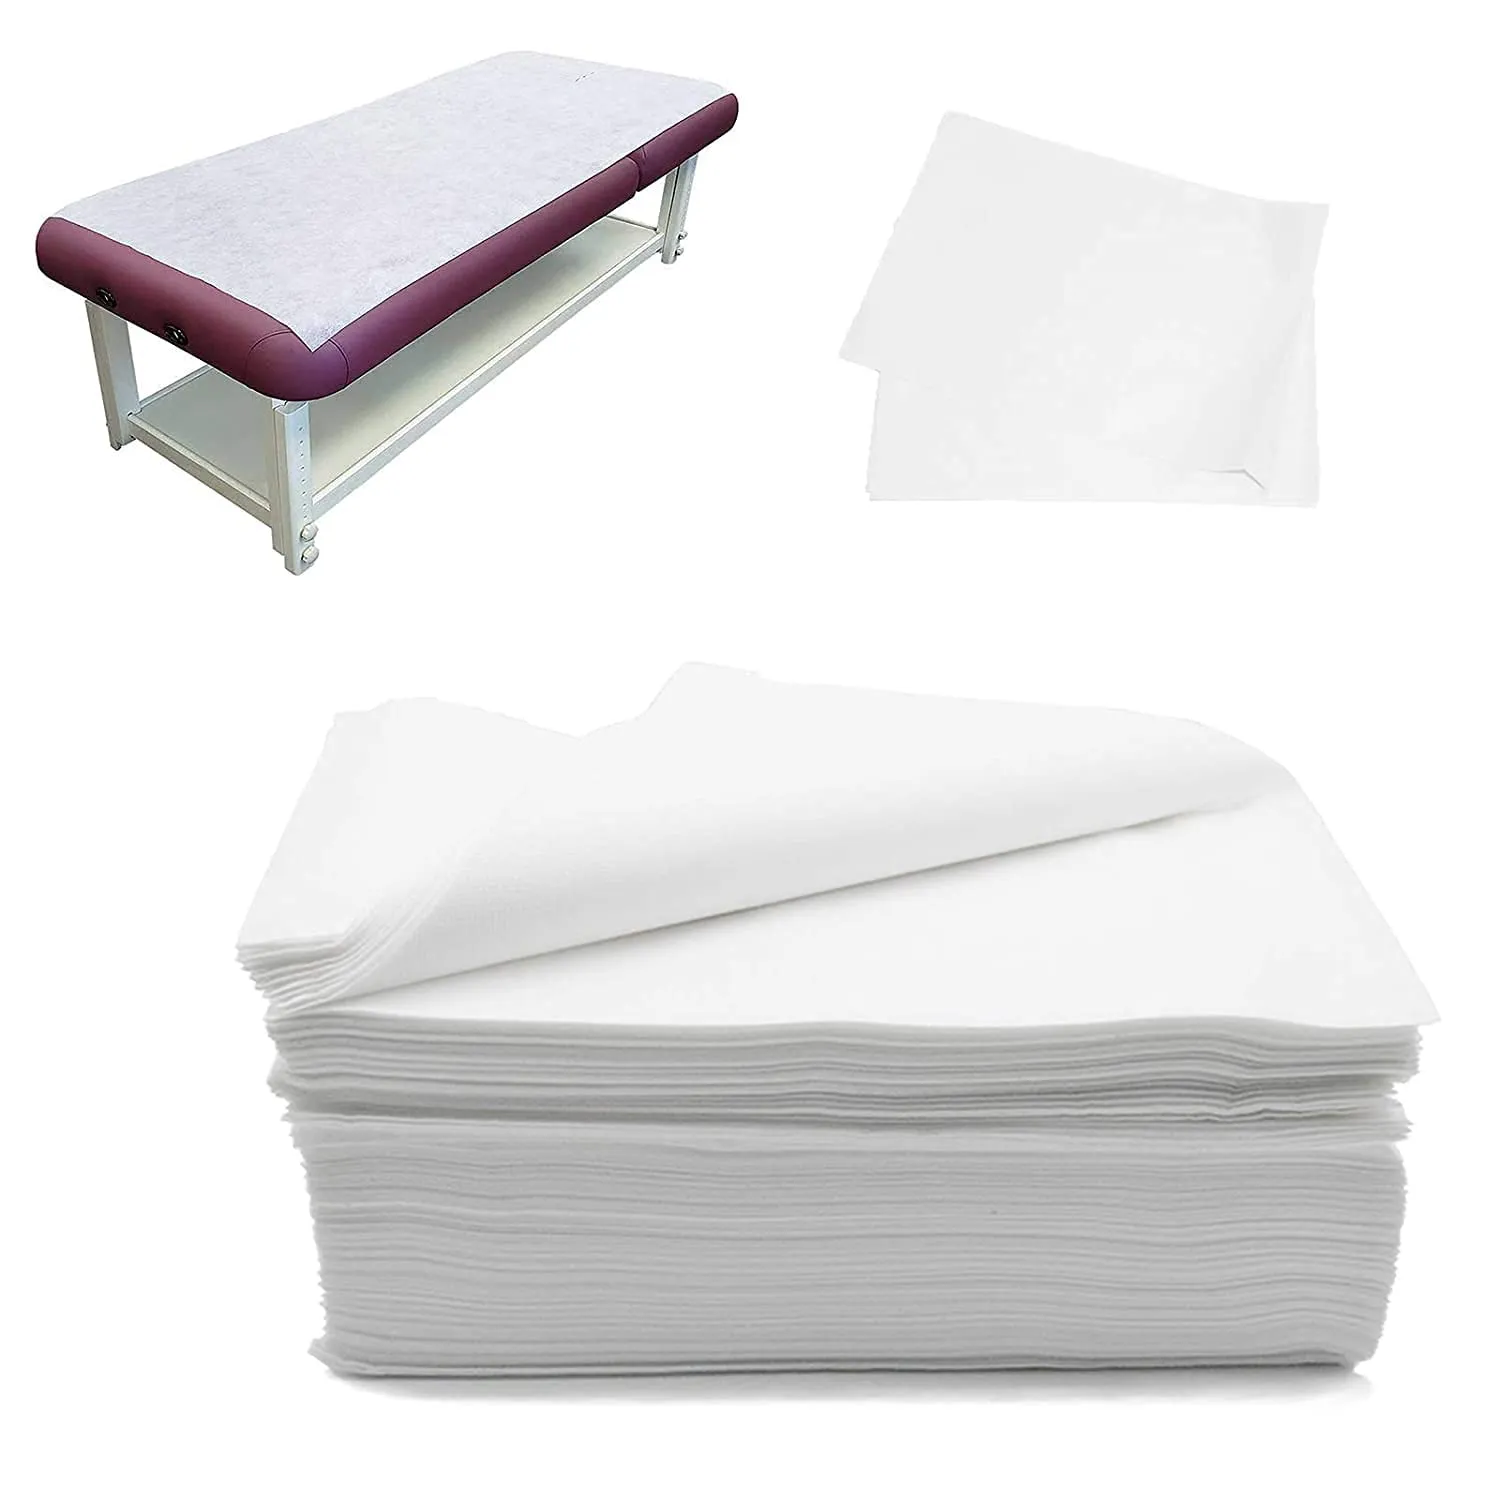 Hygicare Disposable Non-Woven Bed Sheet